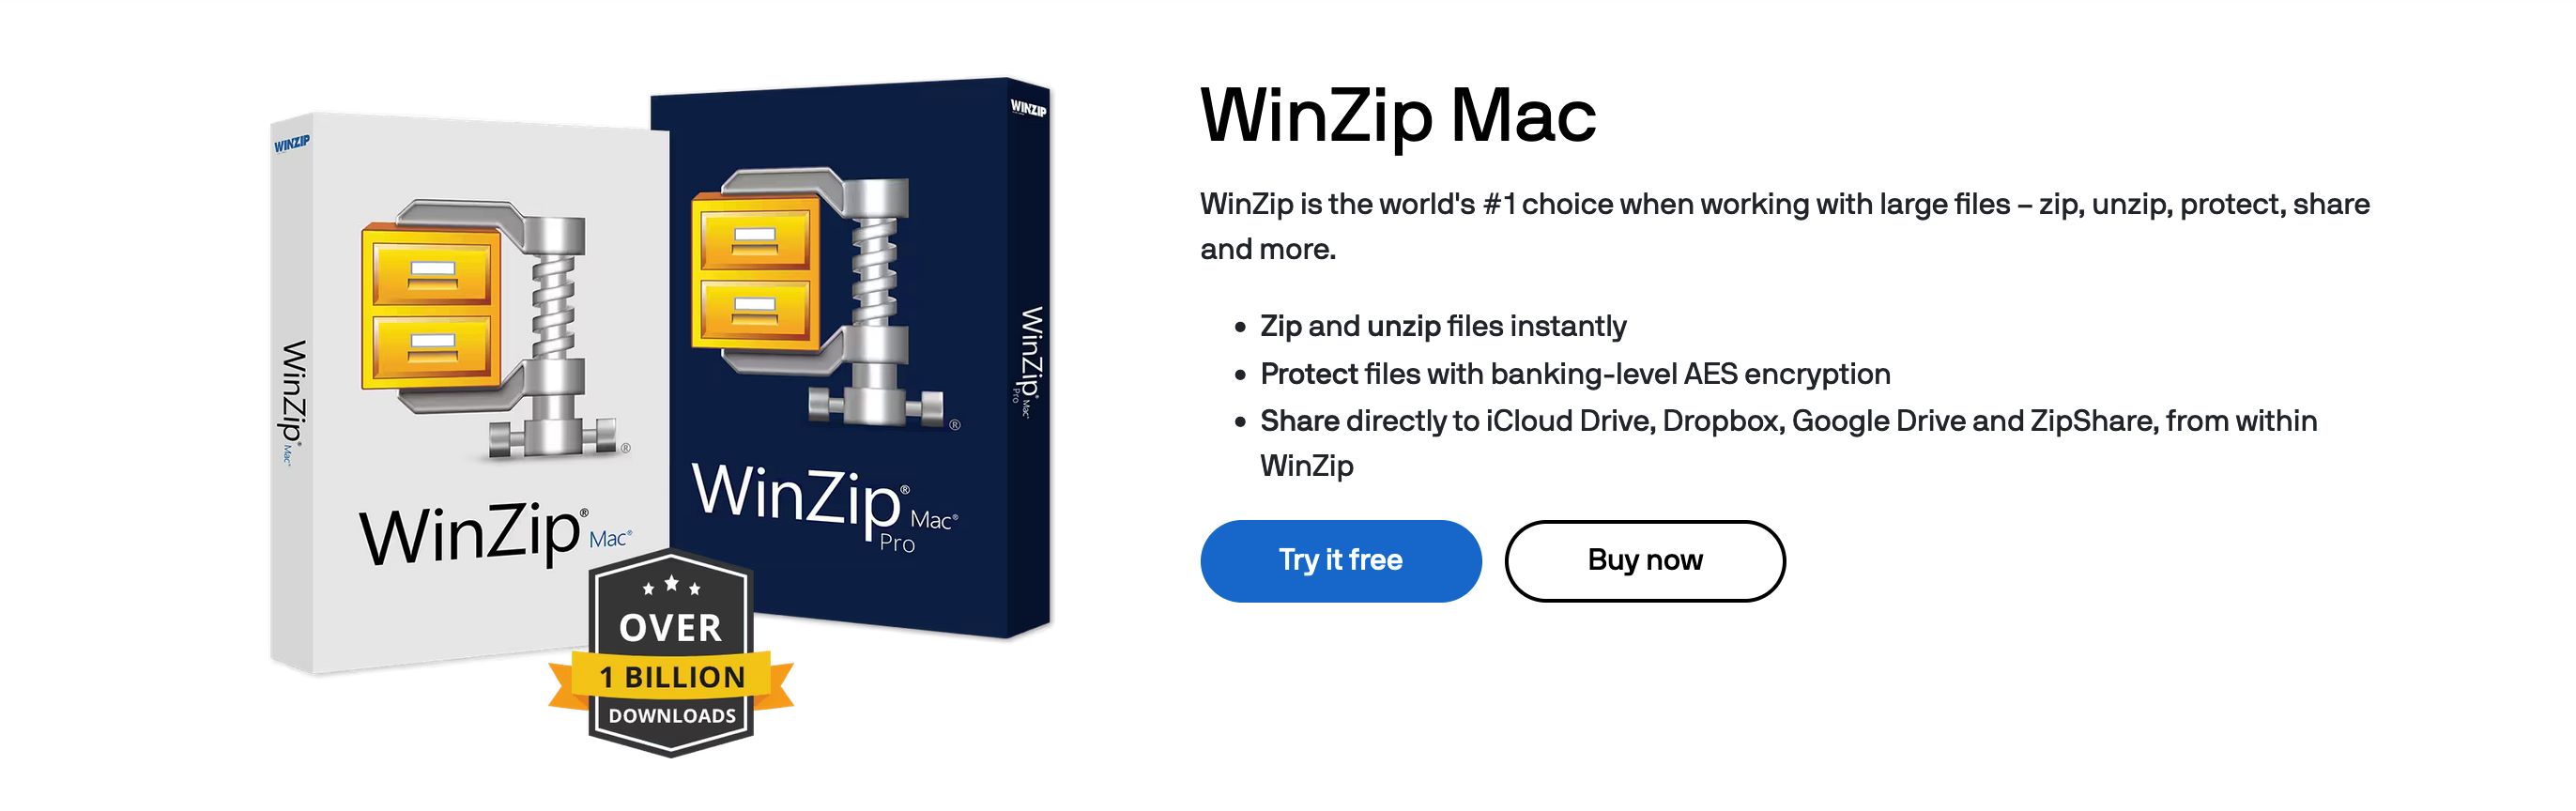 Site officiel de WinZip.